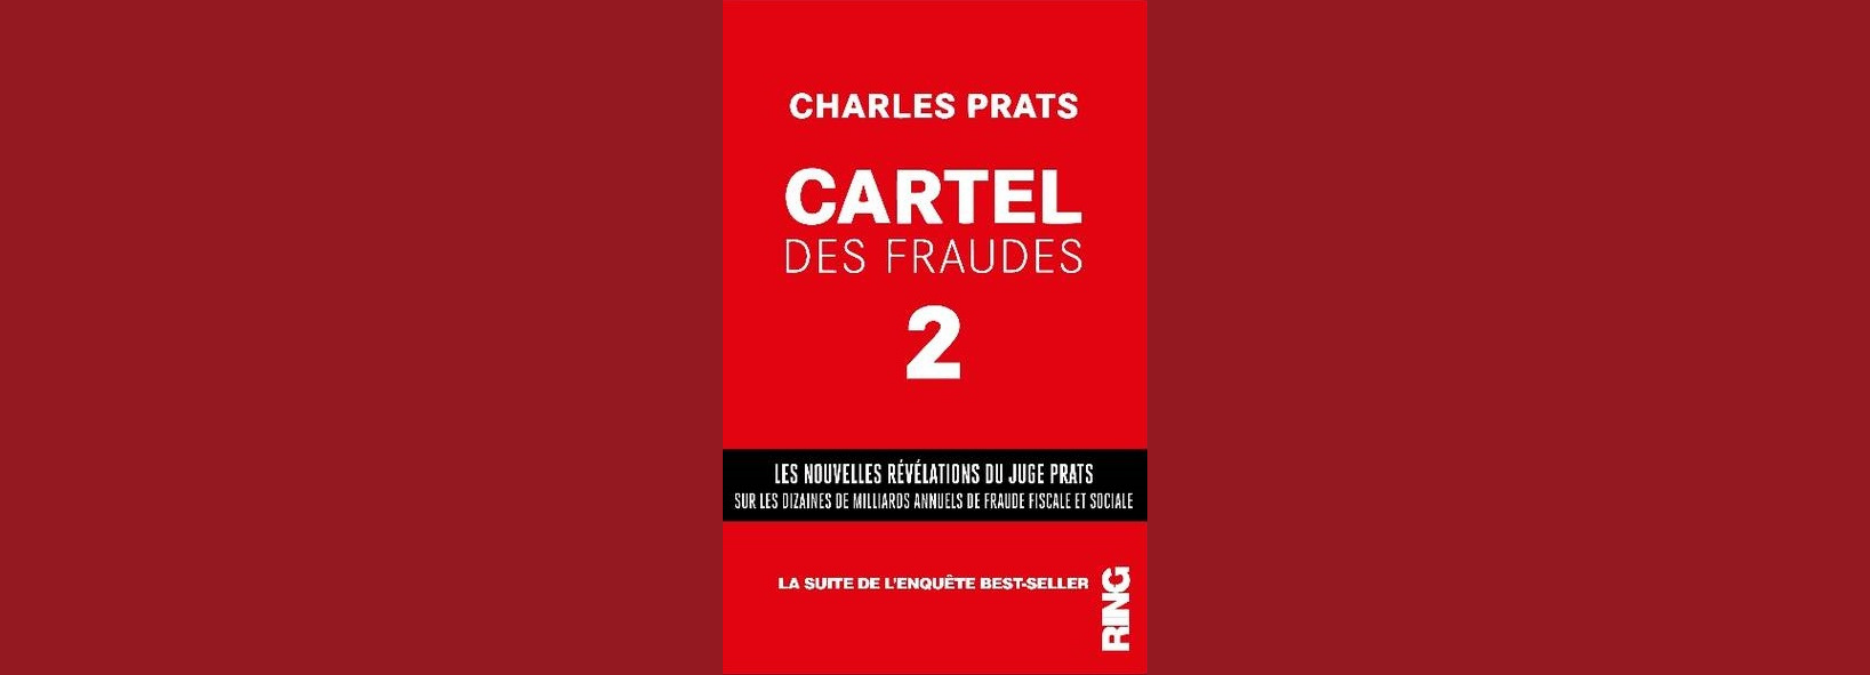 Cartel des fraudes (tome 2), de Charles Prats